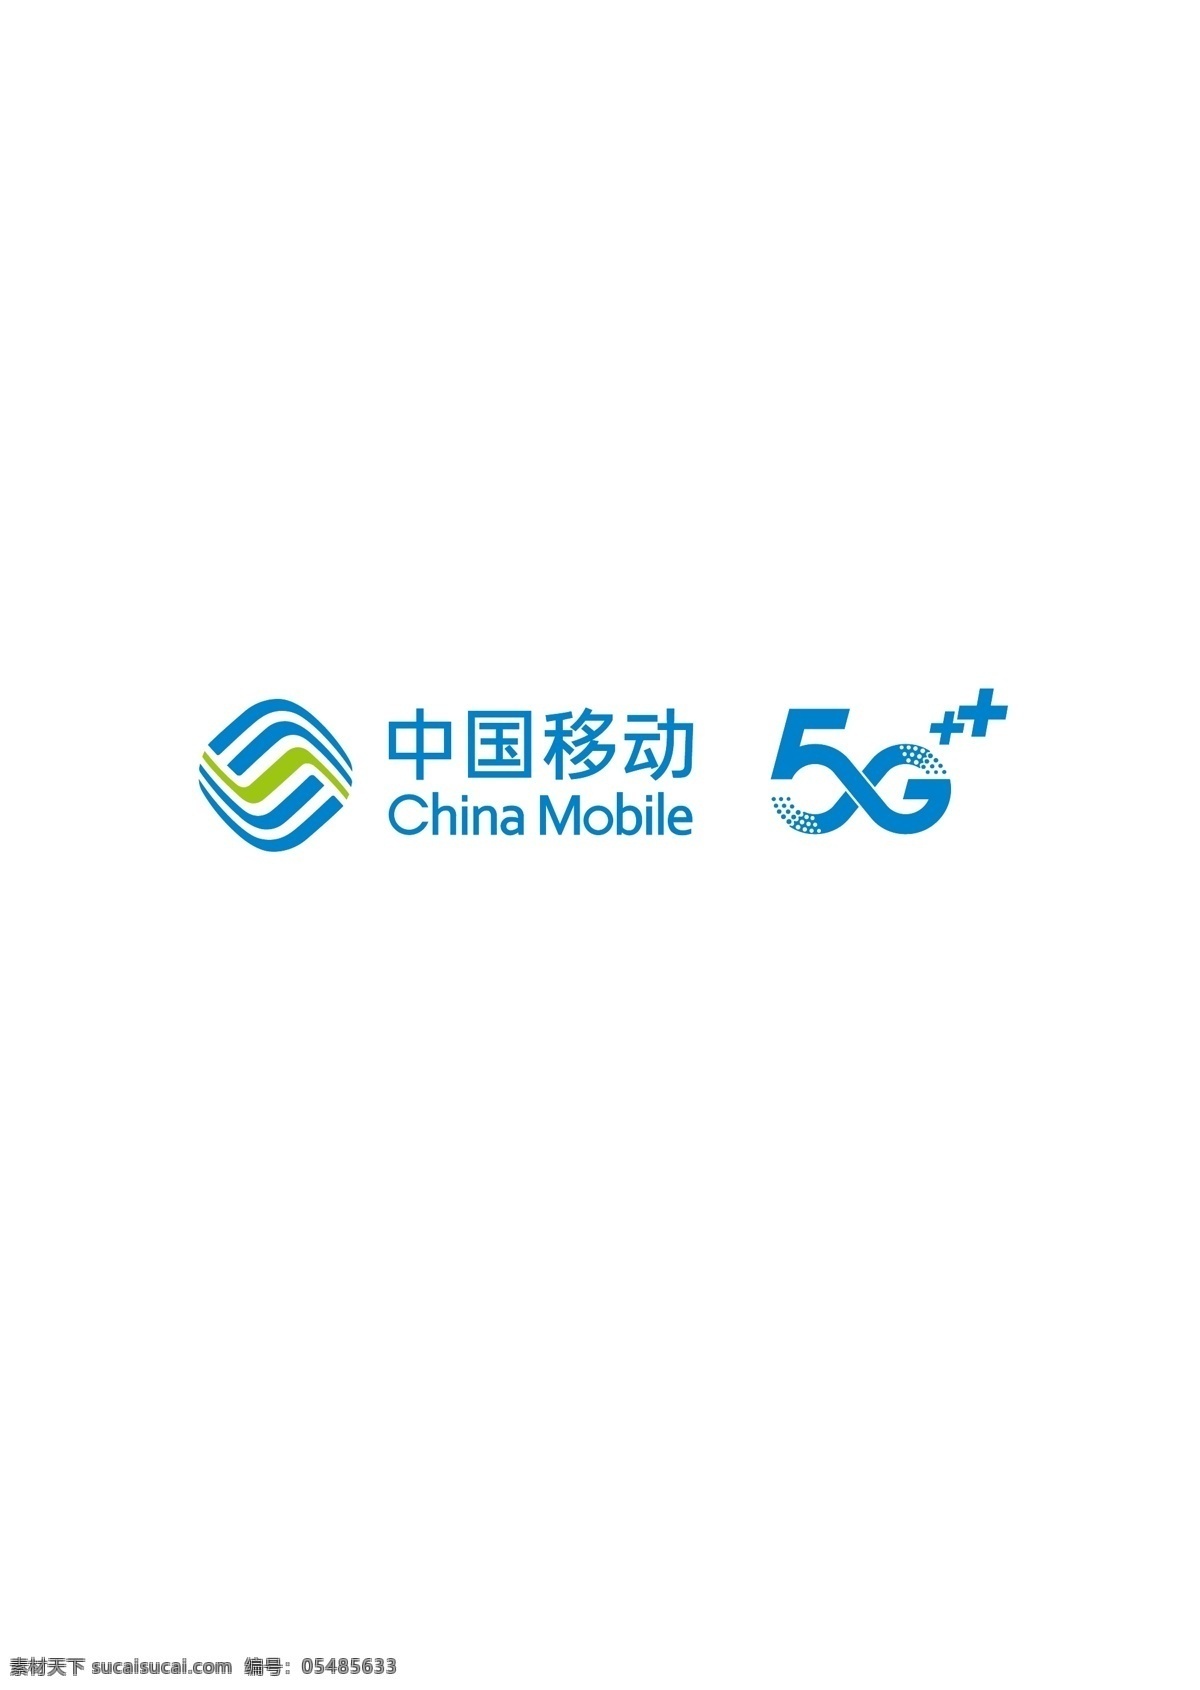 中国移动 5glogo 5g 标志 商标 标志设计 logo设计